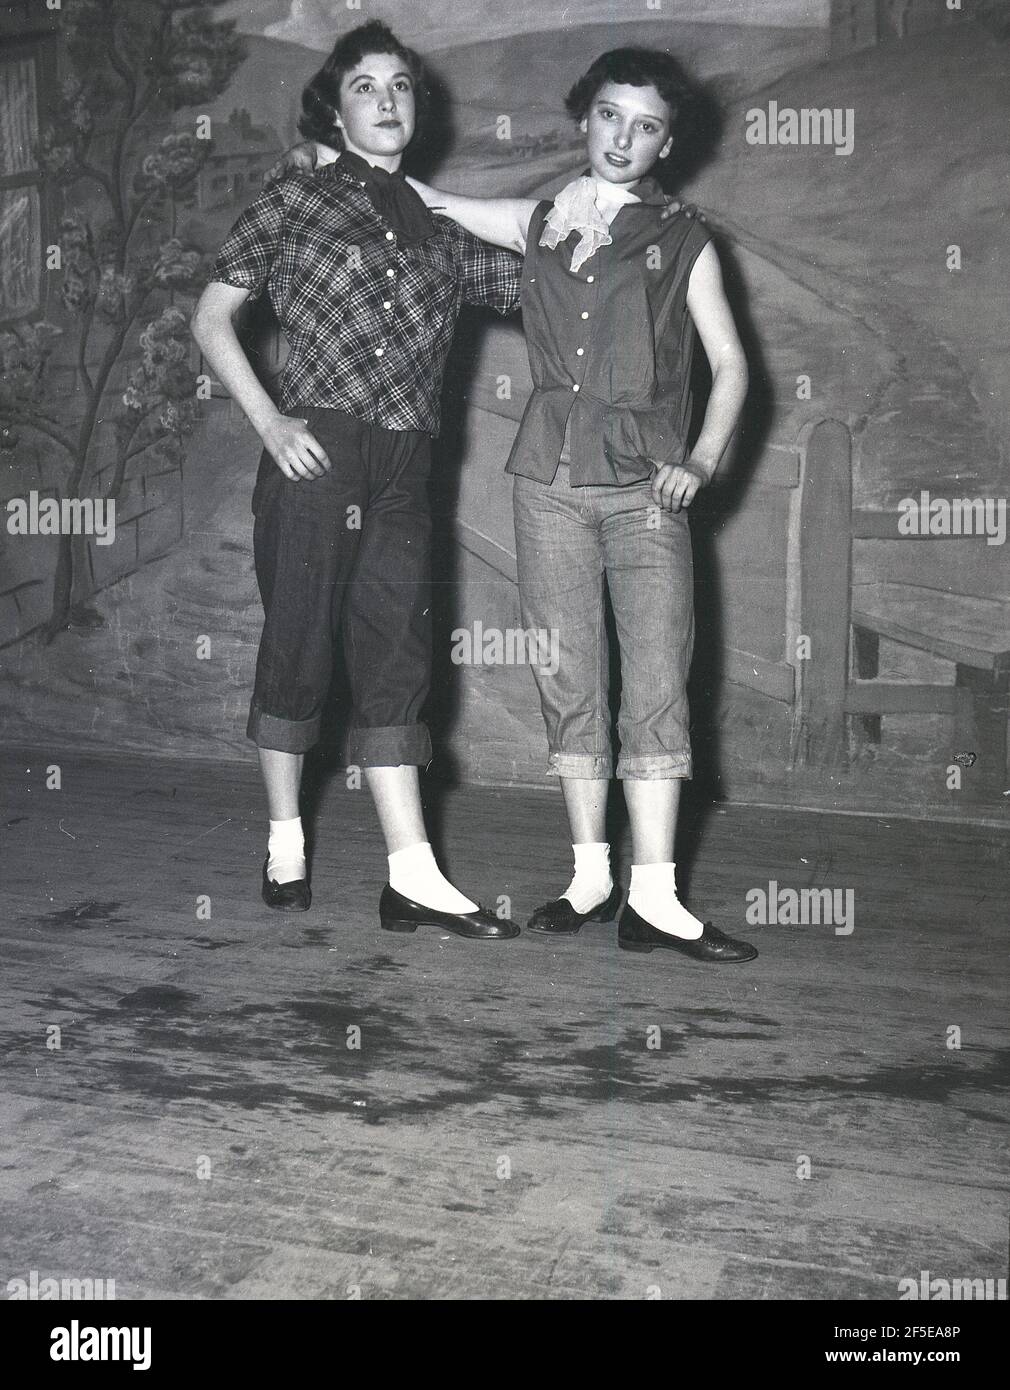 1956, histórico, de pie en un escenario, dos mujeres jóvenes en el  vestuario de sus personajes de la obra, Jack y el Beanstalk, Inglaterra,  Reino Unido. Una historia popular antigua, fue publicada